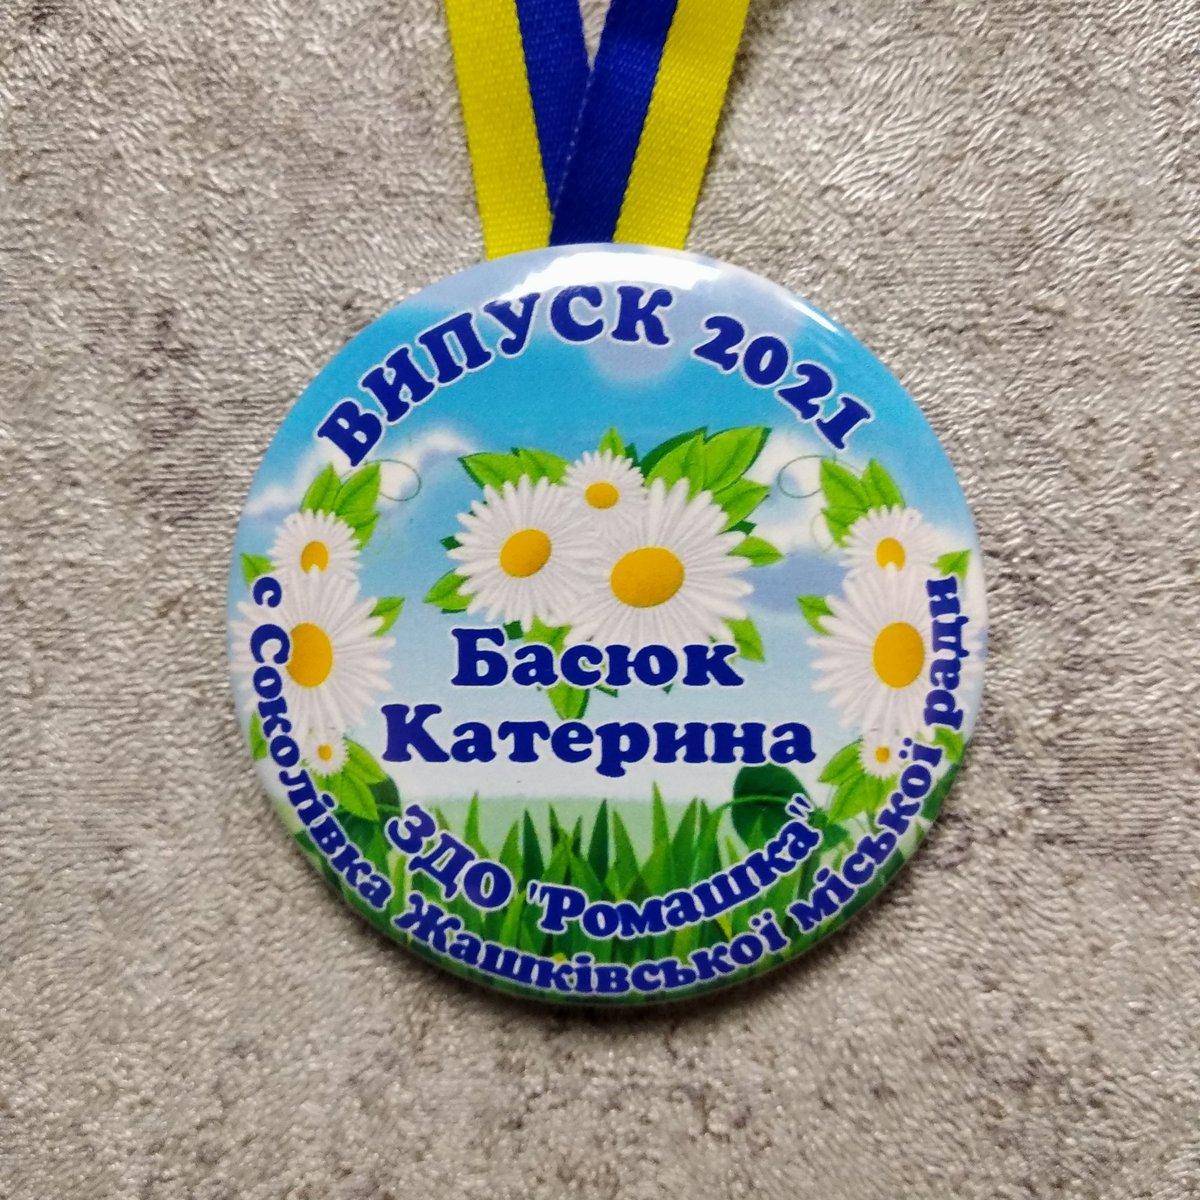 Іменна медаль випускника дитячо садочку зі стрічкою символікою. "Ромашки"